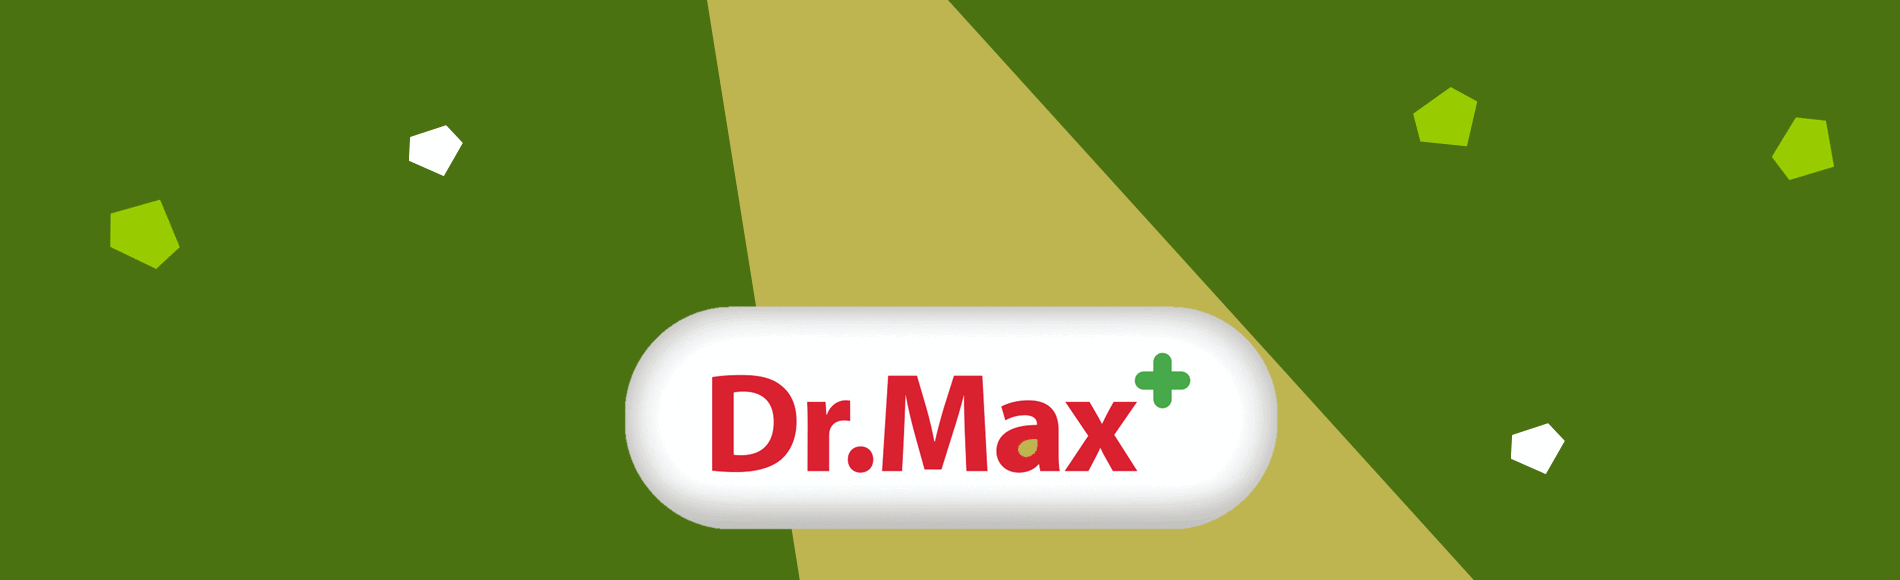 dr.max-citadelo